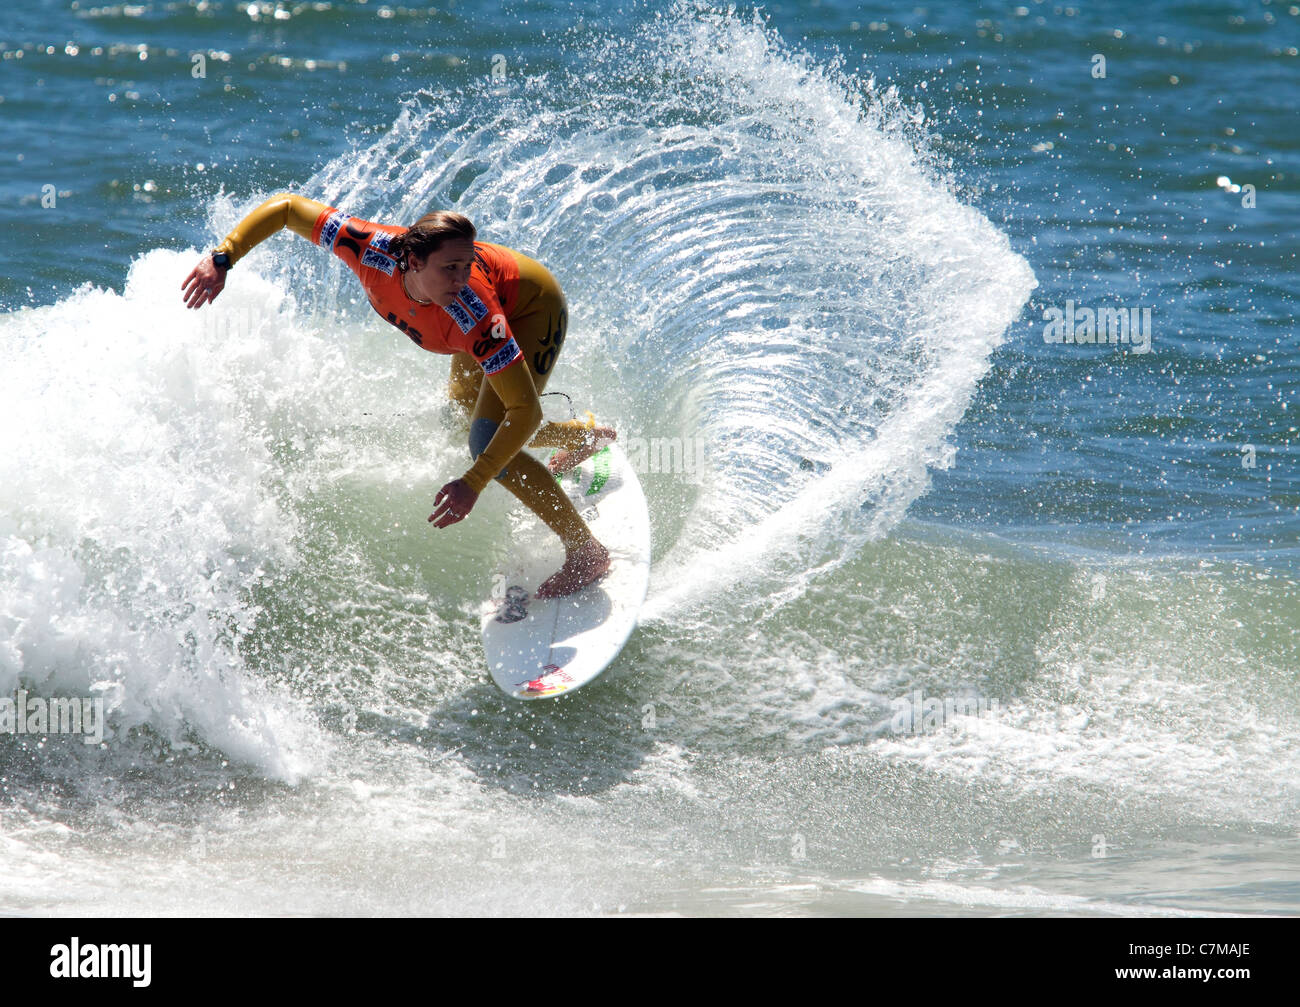 Womens World Champion Surfer Carissa Moore im Wettbewerb bei den uns Open of Surfing in Huntington Beach Kalifornien Stockfoto